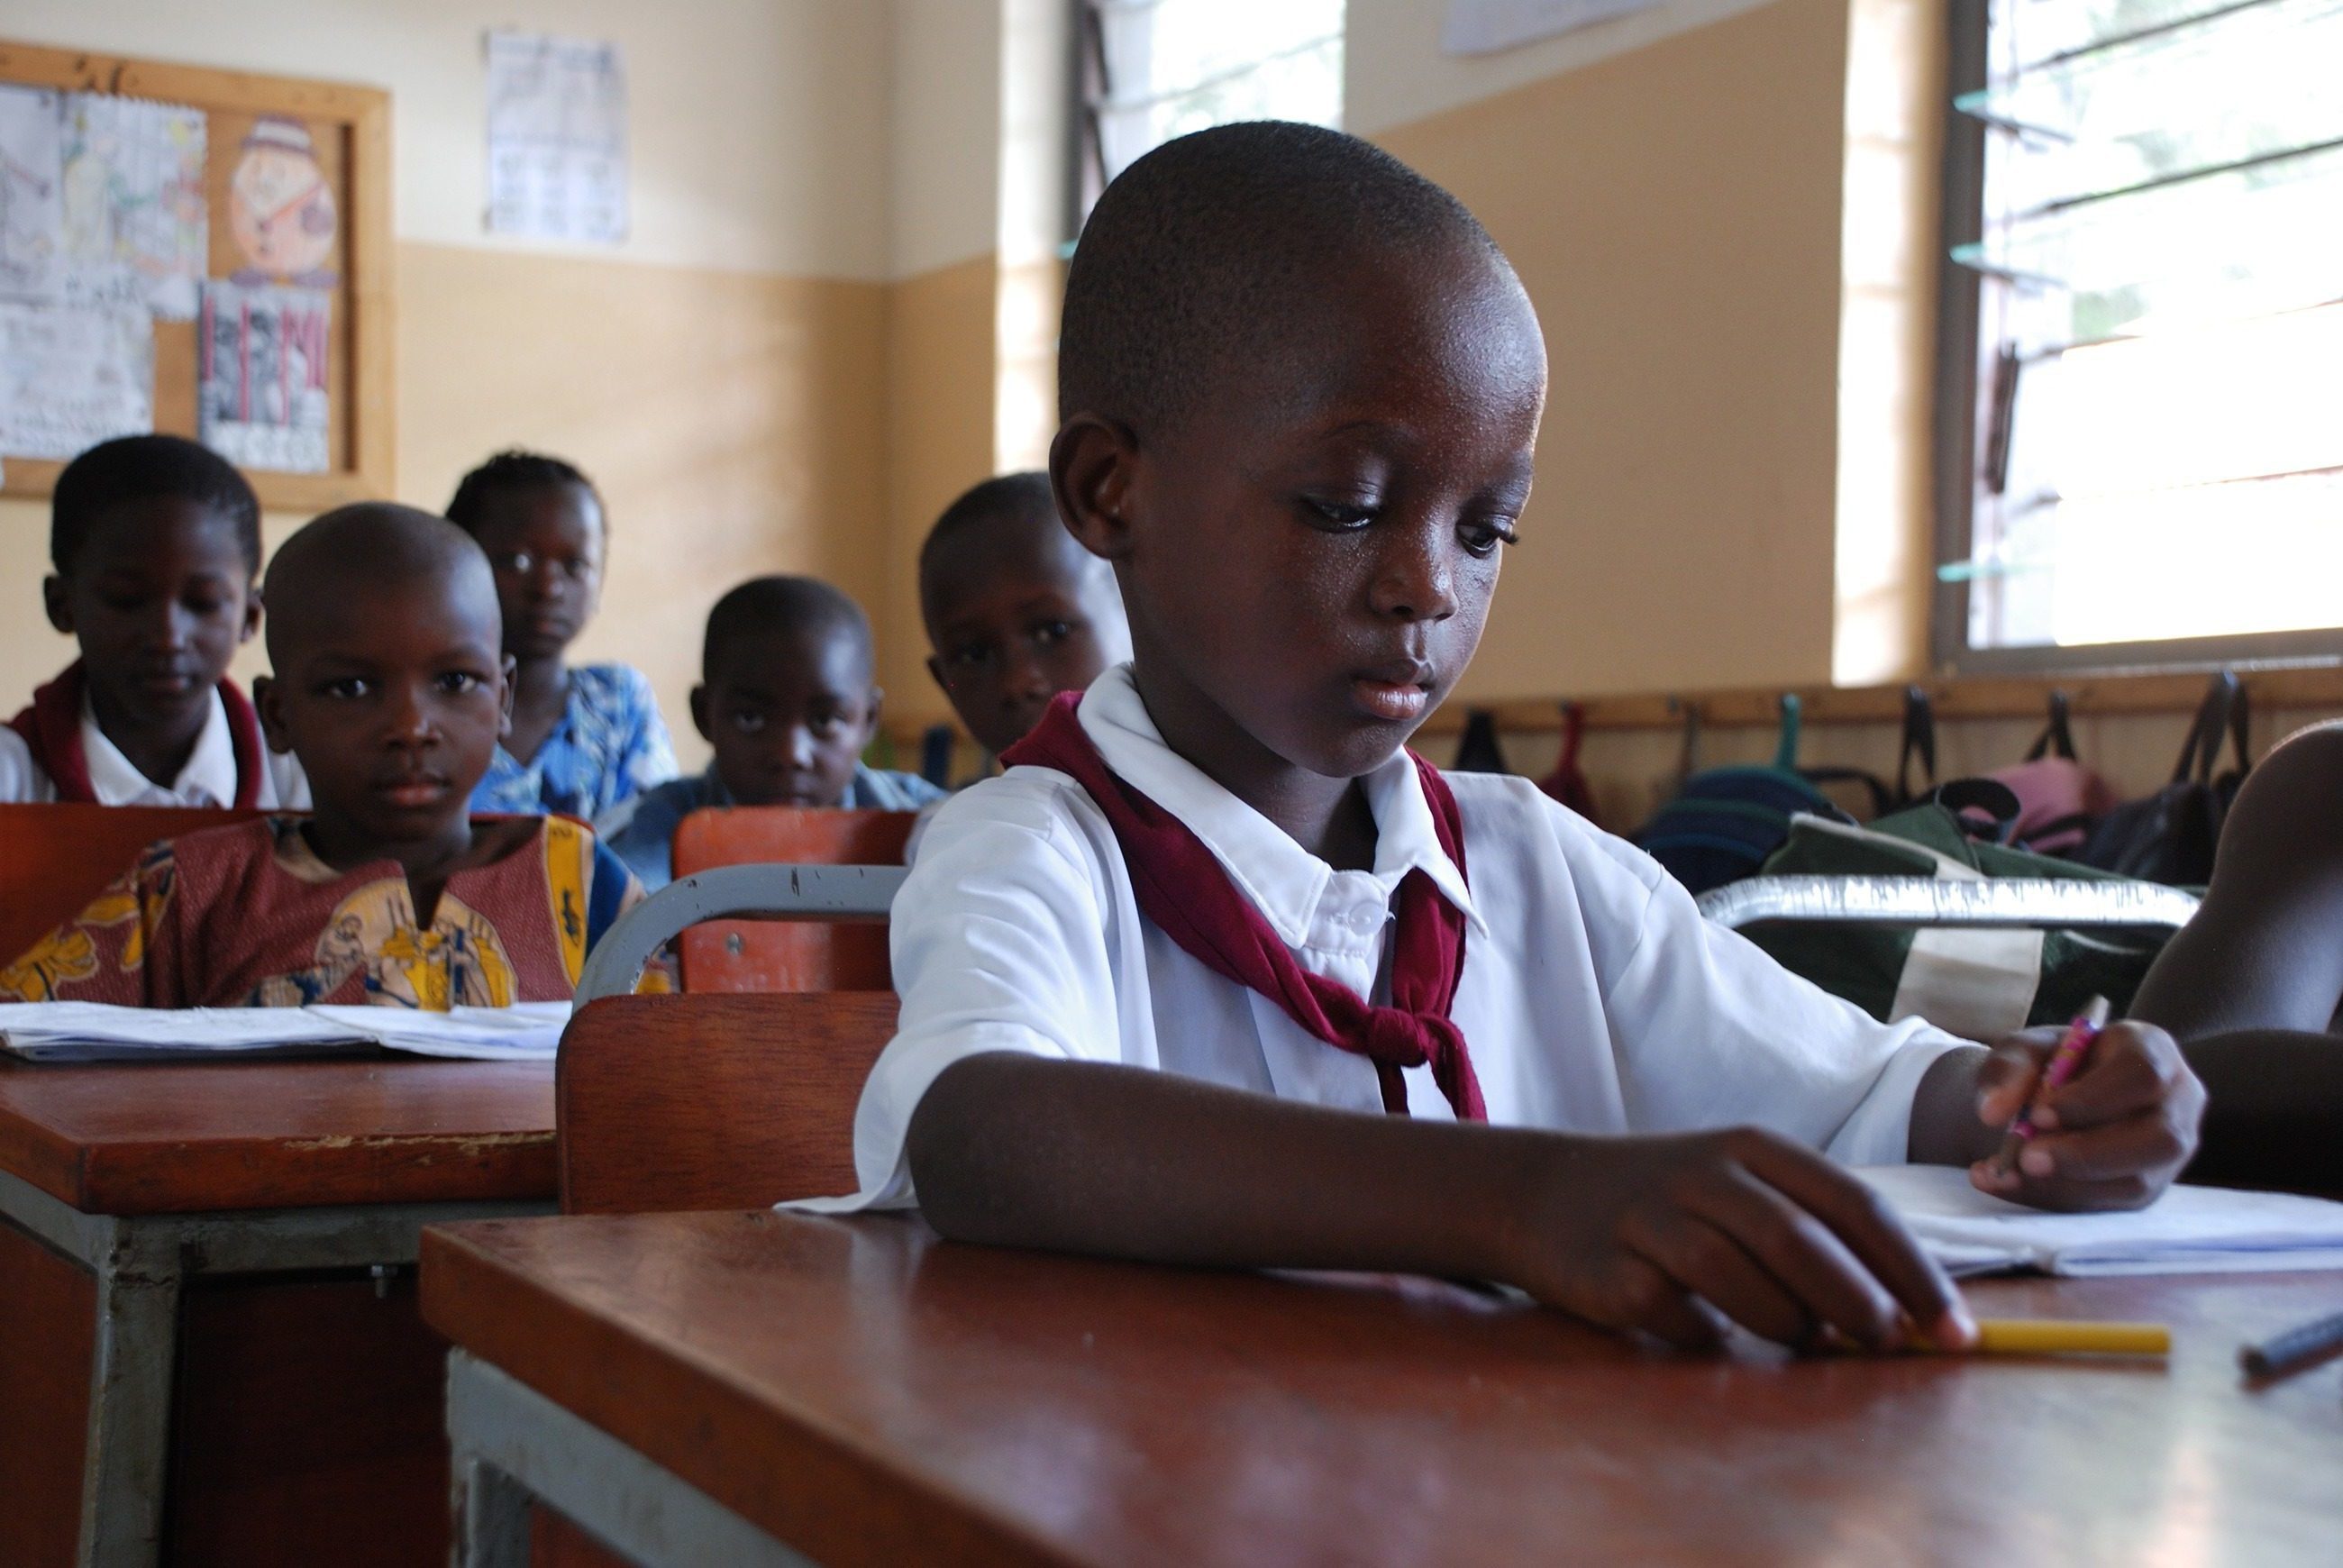 Scolaretto in aula in un SOS Villaggio dei Bambini in Africa.